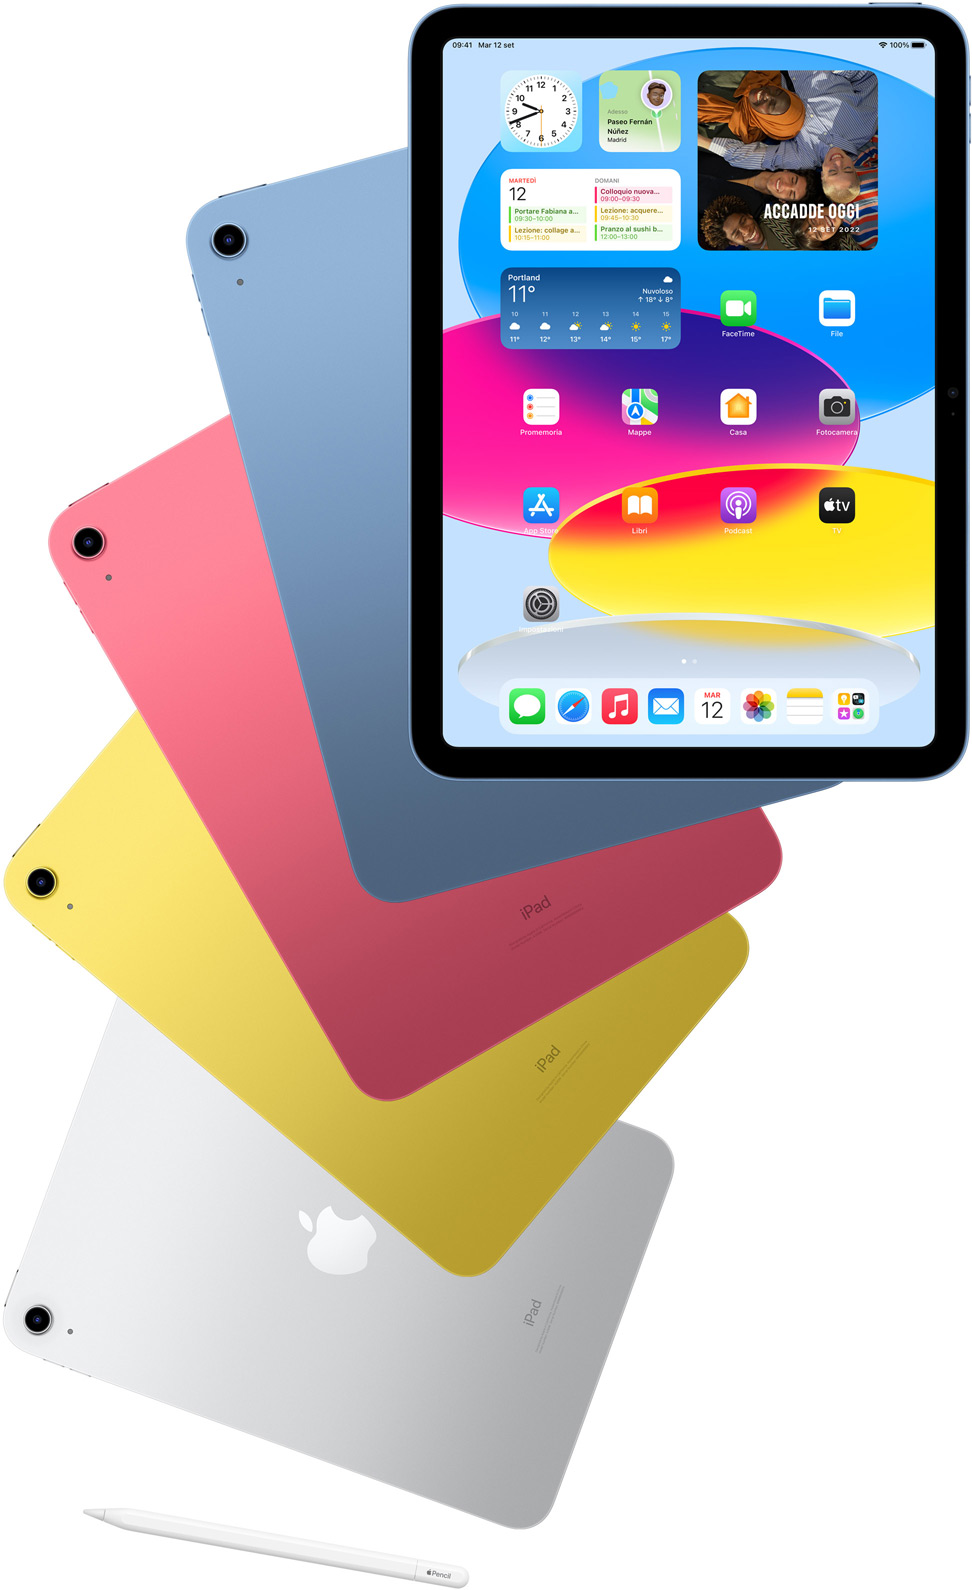 Vista anteriore di iPad che mostra la schermata Home, davanti a quattro iPad visti da dietro nei colori blu, rosa, giallo e argento. Sotto agli iPad c’è un’Apple Pencil.